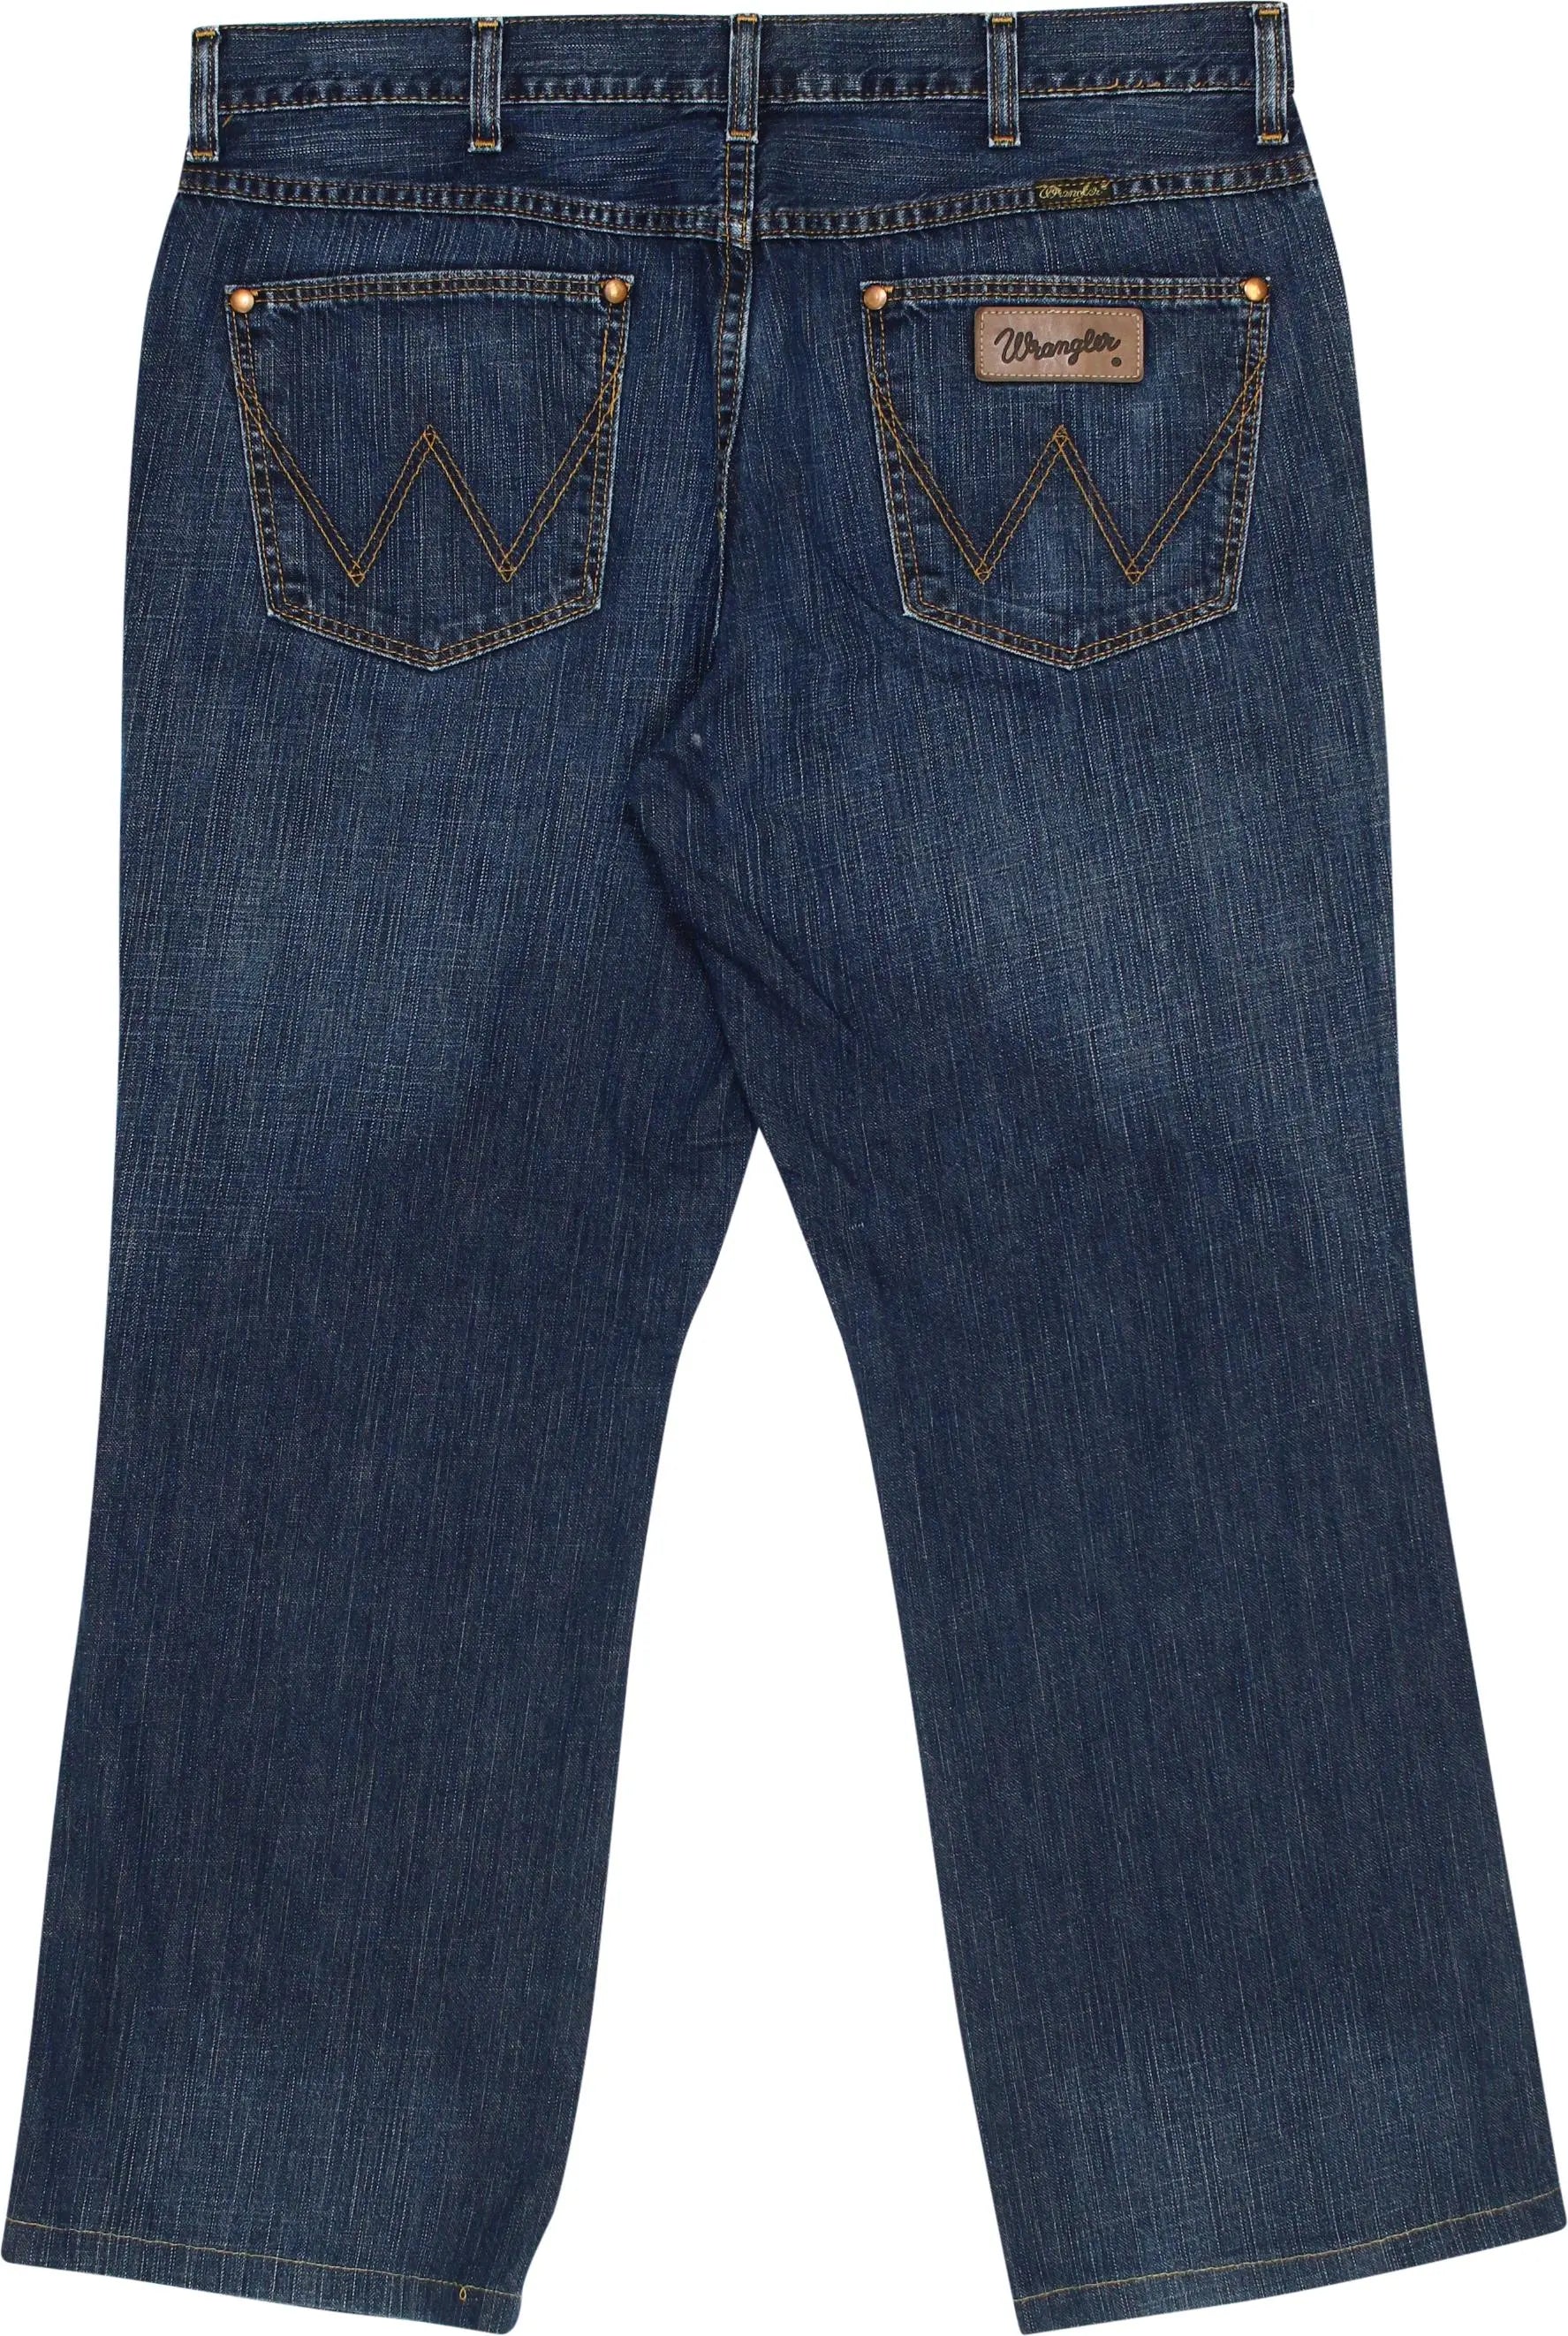 Wrangler - Wrangler Alaska Regular Fit Jeans- ThriftTale.com - Vintage and second handclothing